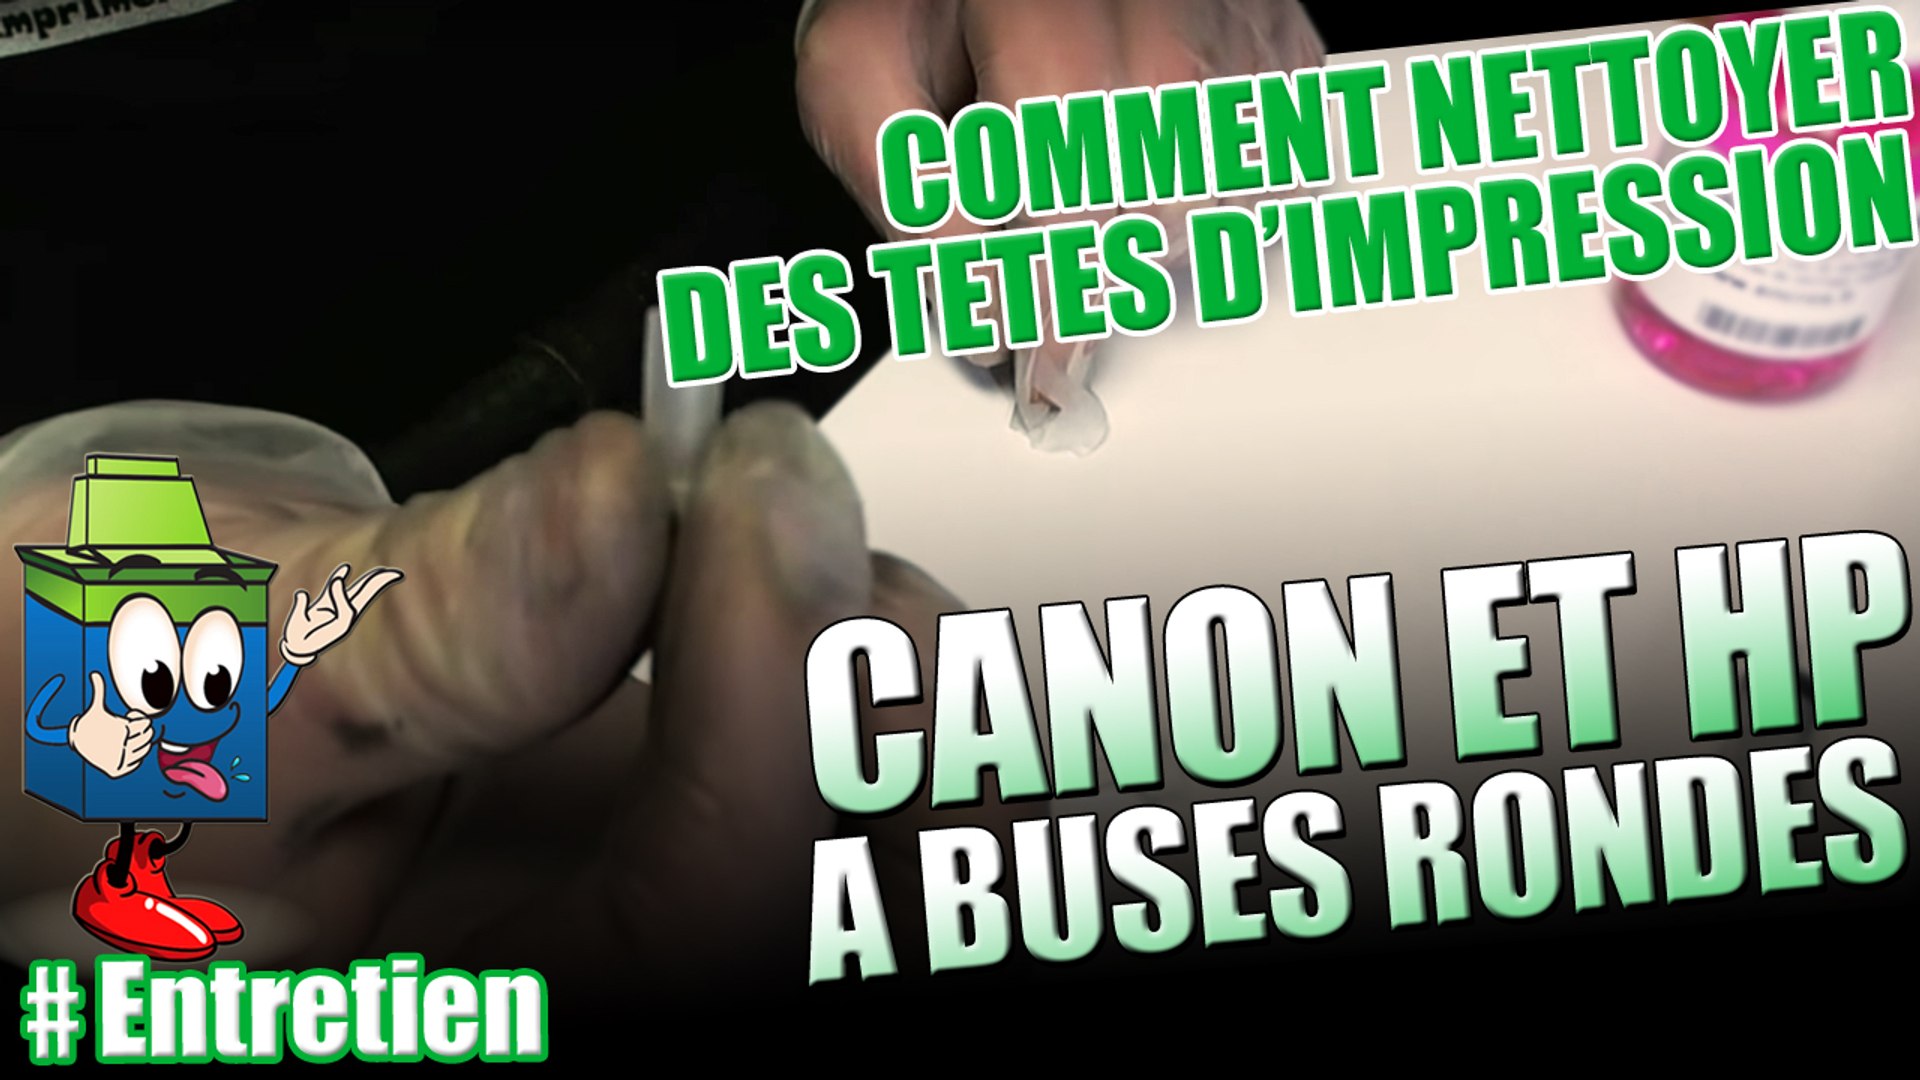 Apprenez à nettoyer des têtes d'impression Canon et HP à buses rondes -  Vidéo Dailymotion